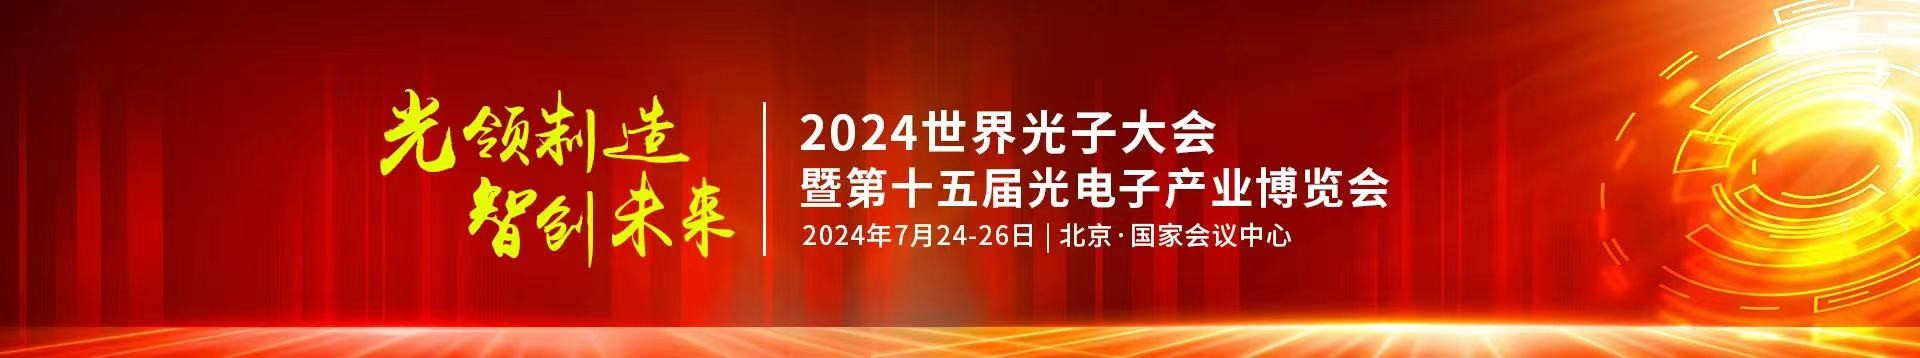 澳门新葡萄新京8883not公司受邀参加2024年第十五届光电子产业博览会